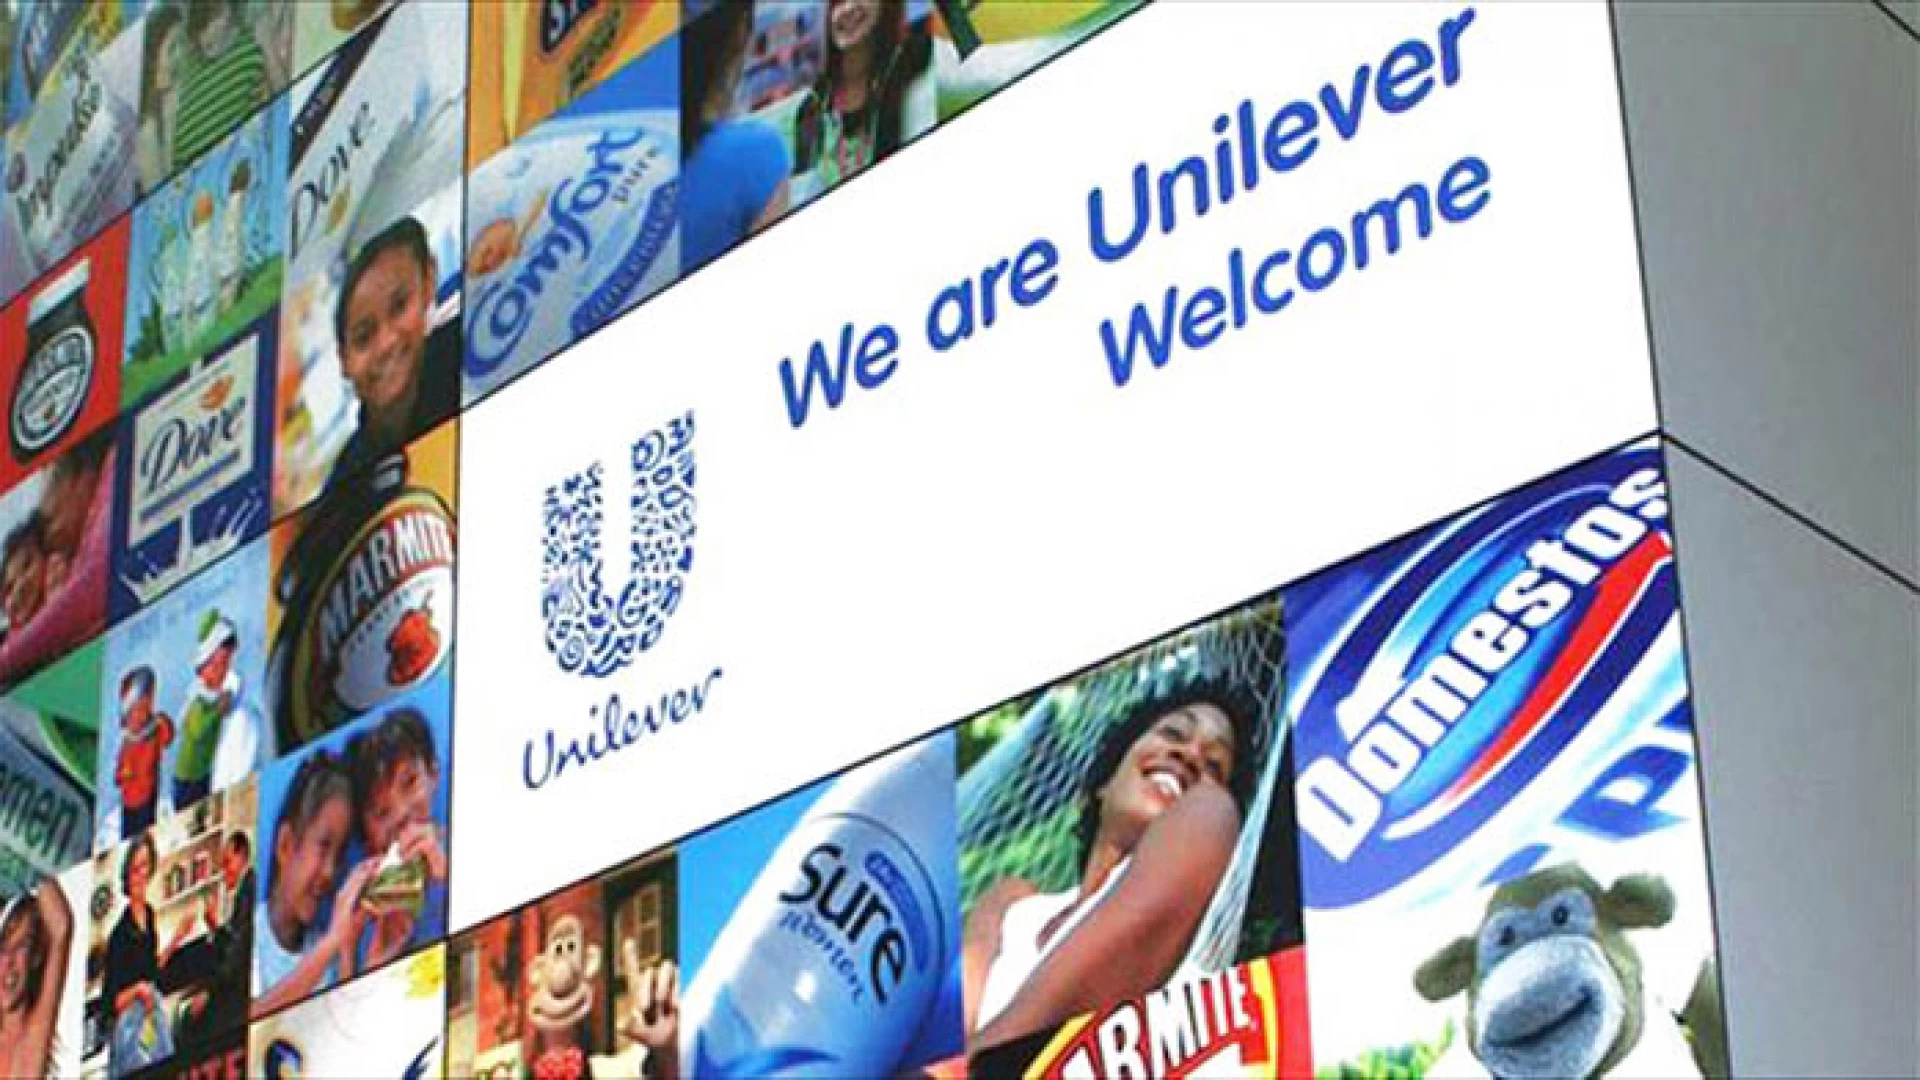 Pozzilli: domani la Presentazione del progetto di rilancio industriale dello stabilimento Unilever di Pozzilli (IS)